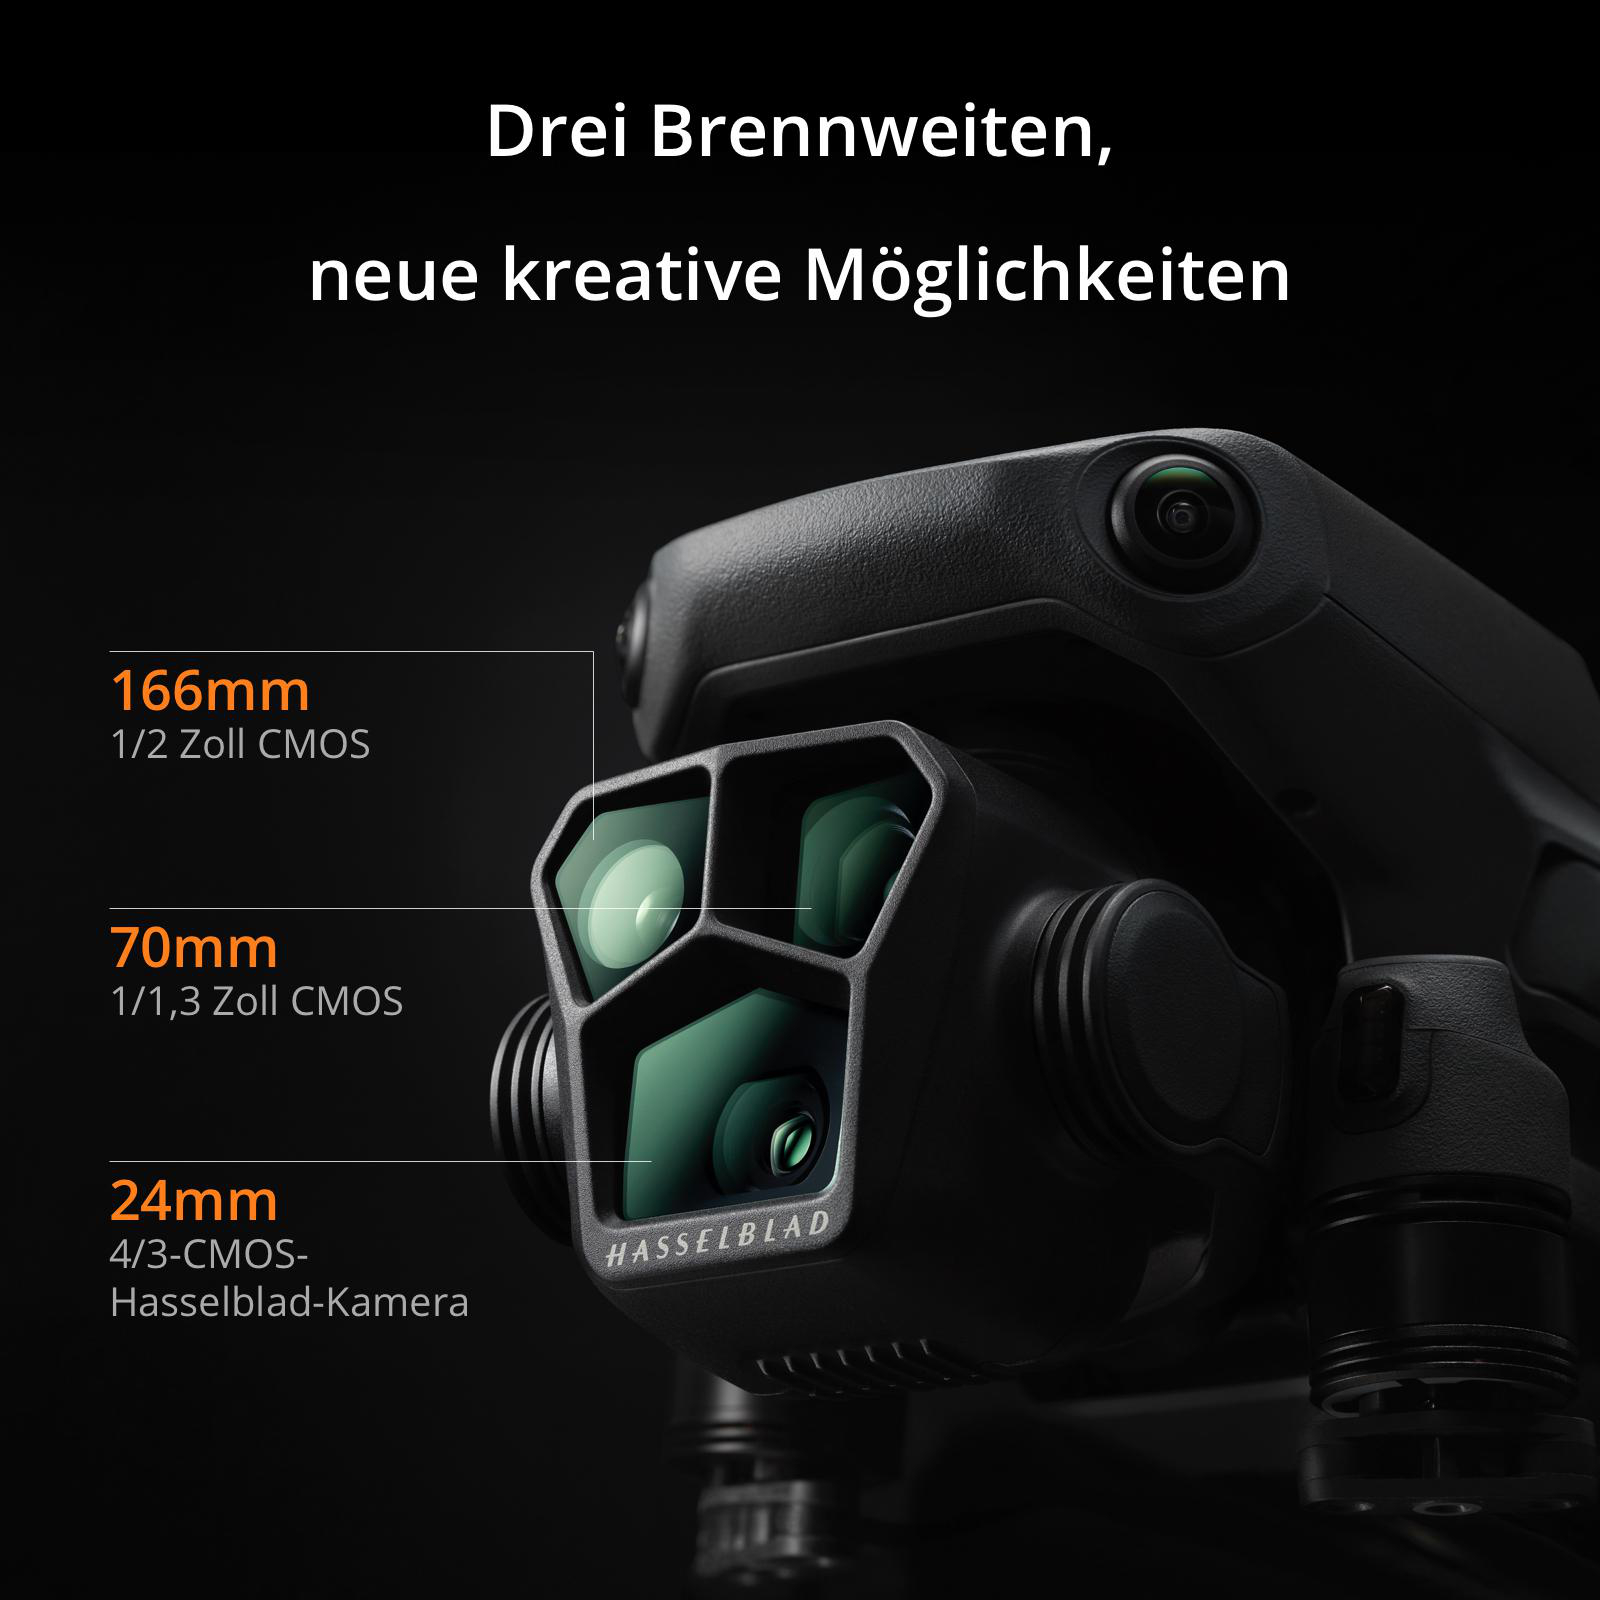 DJI Mavic Drohne, Pro RC) (DJI 3 Grau/Schwarz